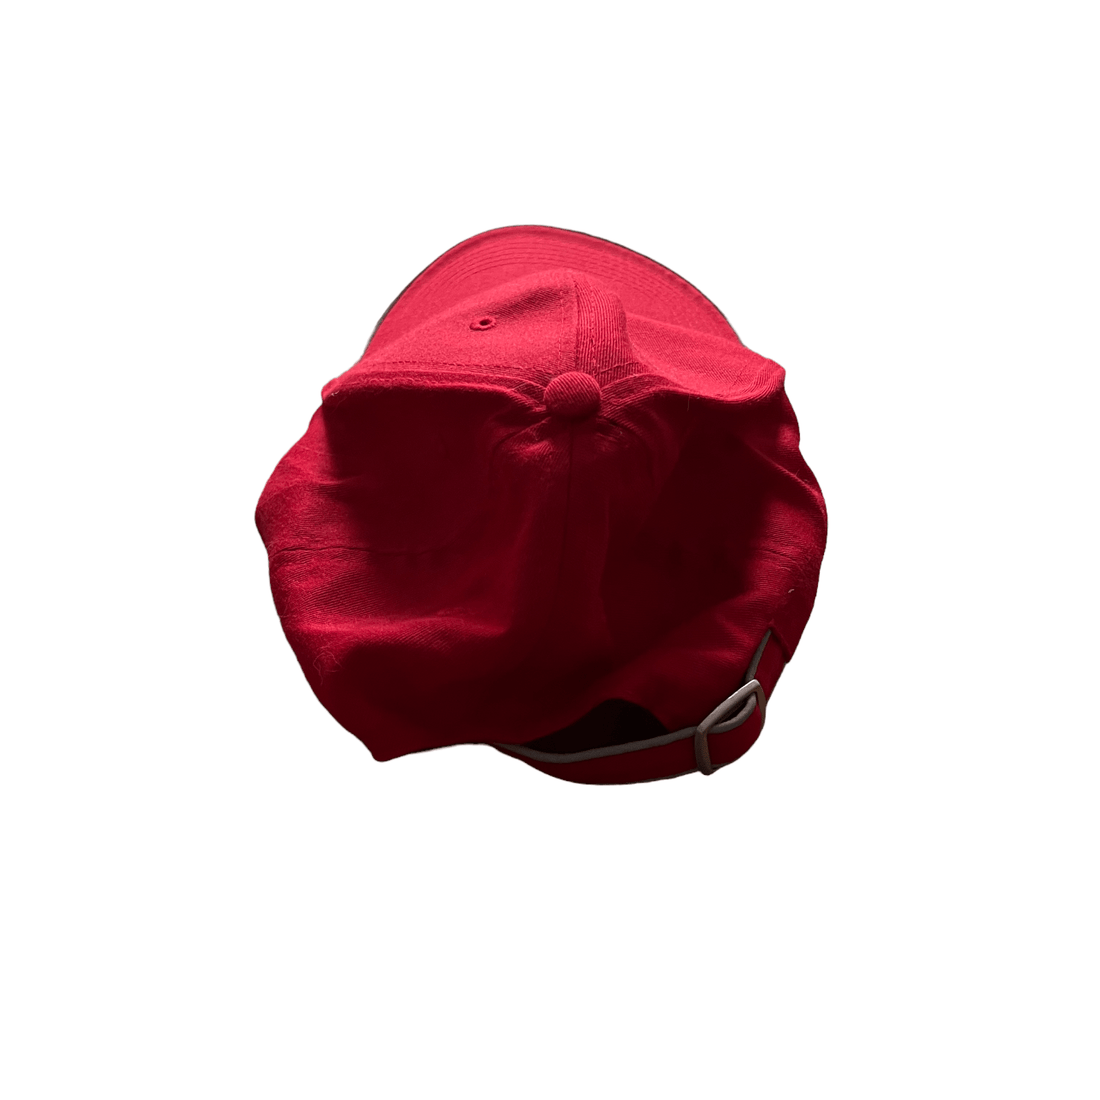 Vintage Red Audi Cap - The Streetwear Studio